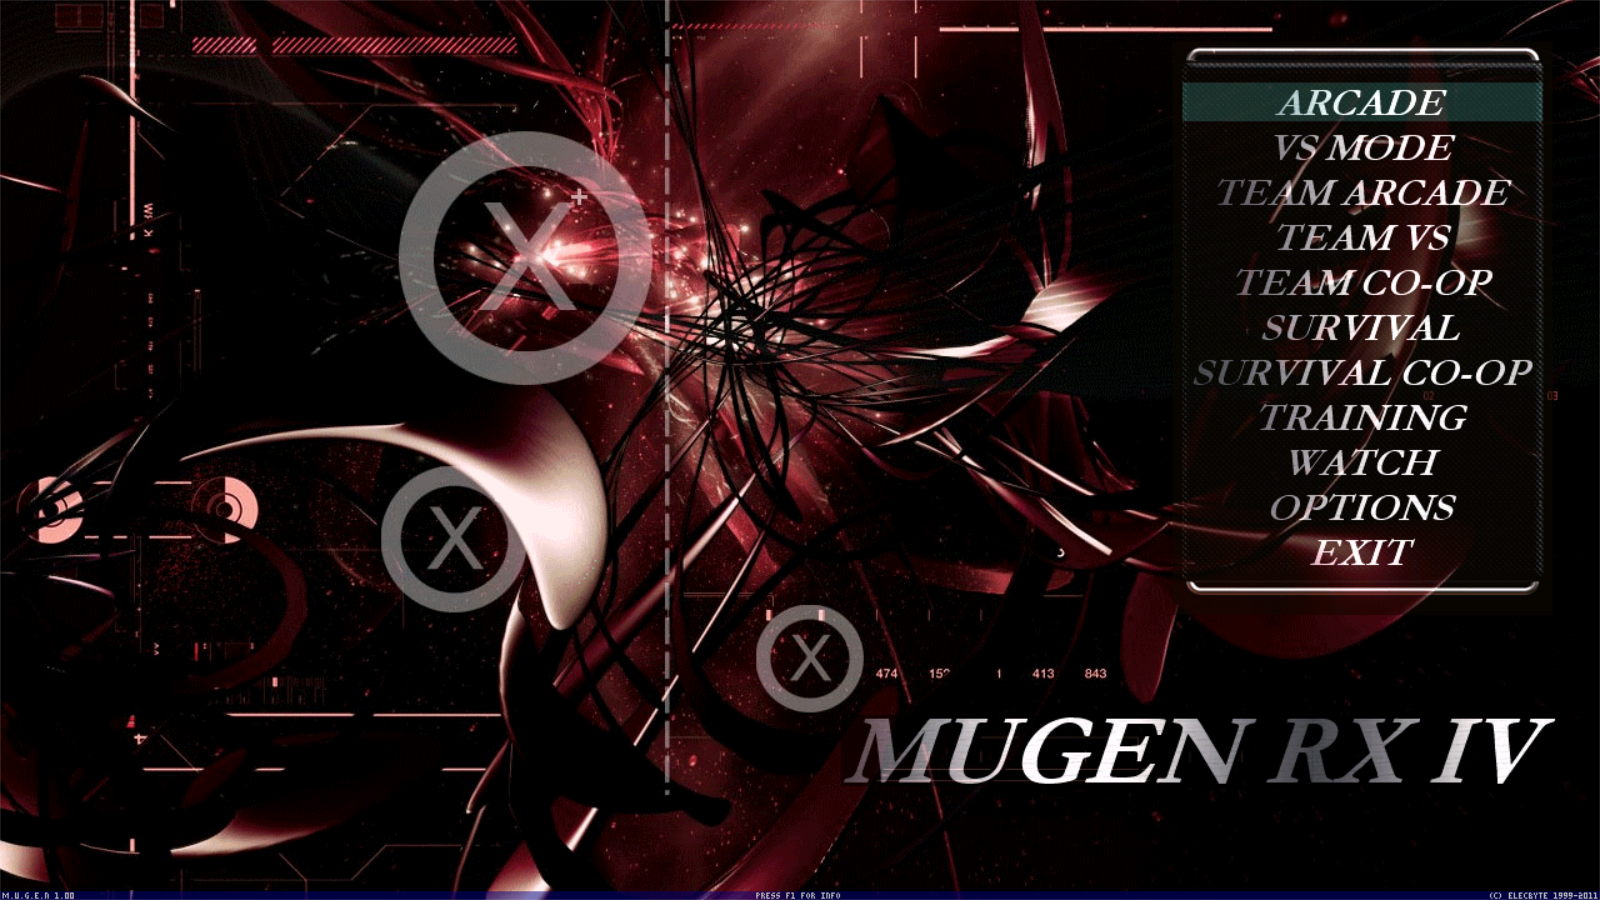 MUGEN RX IV screenpack mugen 1.0